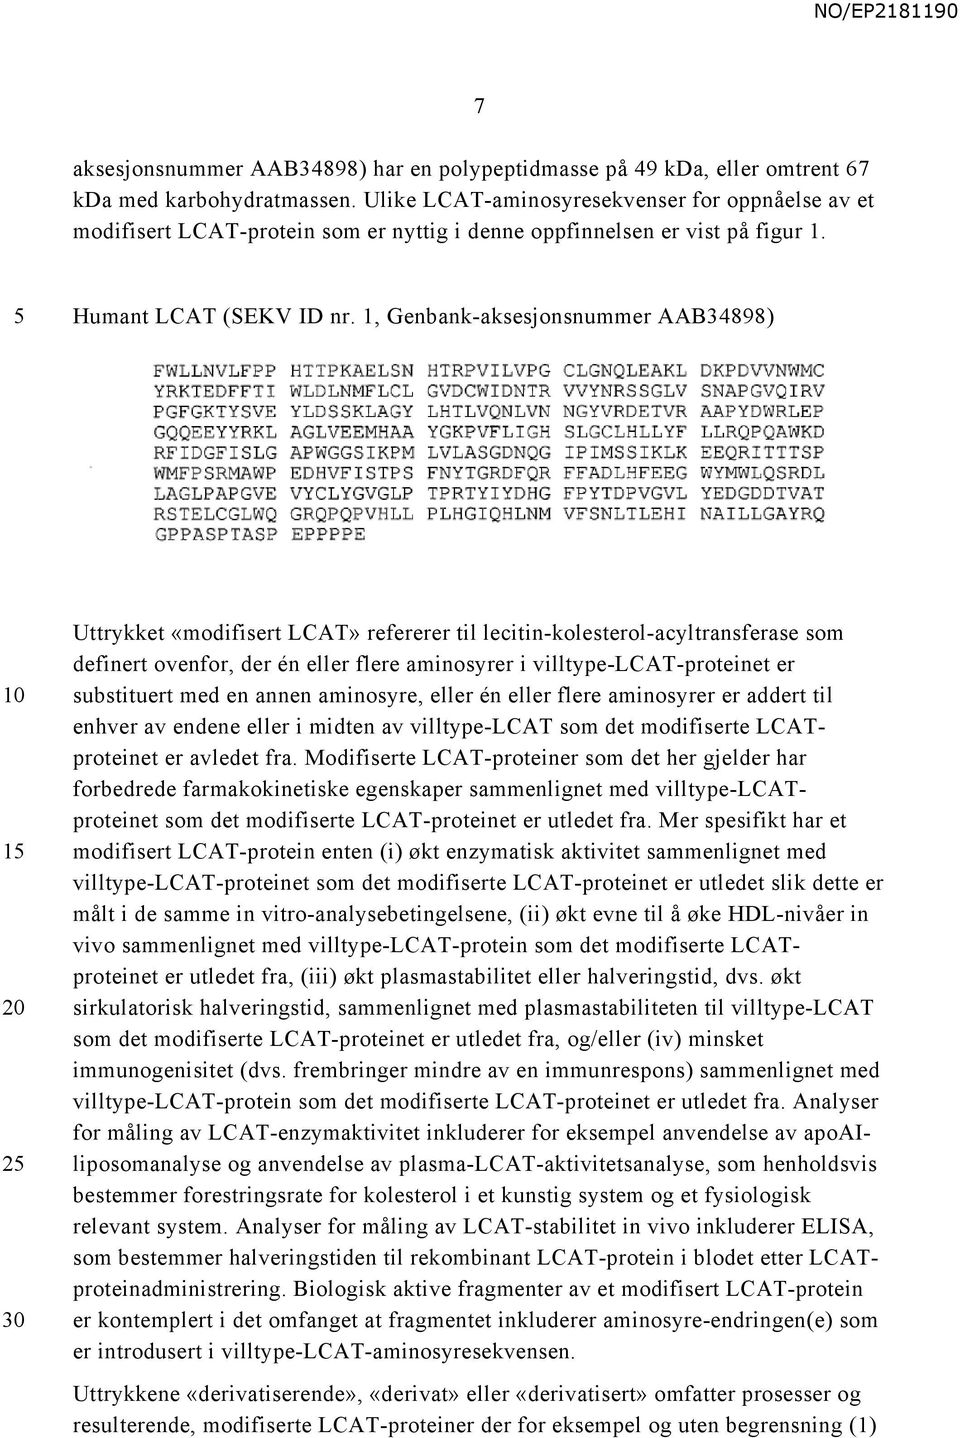 1, Genbank-aksesjonsnummer AAB34898) 1 2 Uttrykket «modifisert LCAT» refererer til lecitin-kolesterol-acyltransferase som definert ovenfor, der én eller flere aminosyrer i villtype-lcat-proteinet er